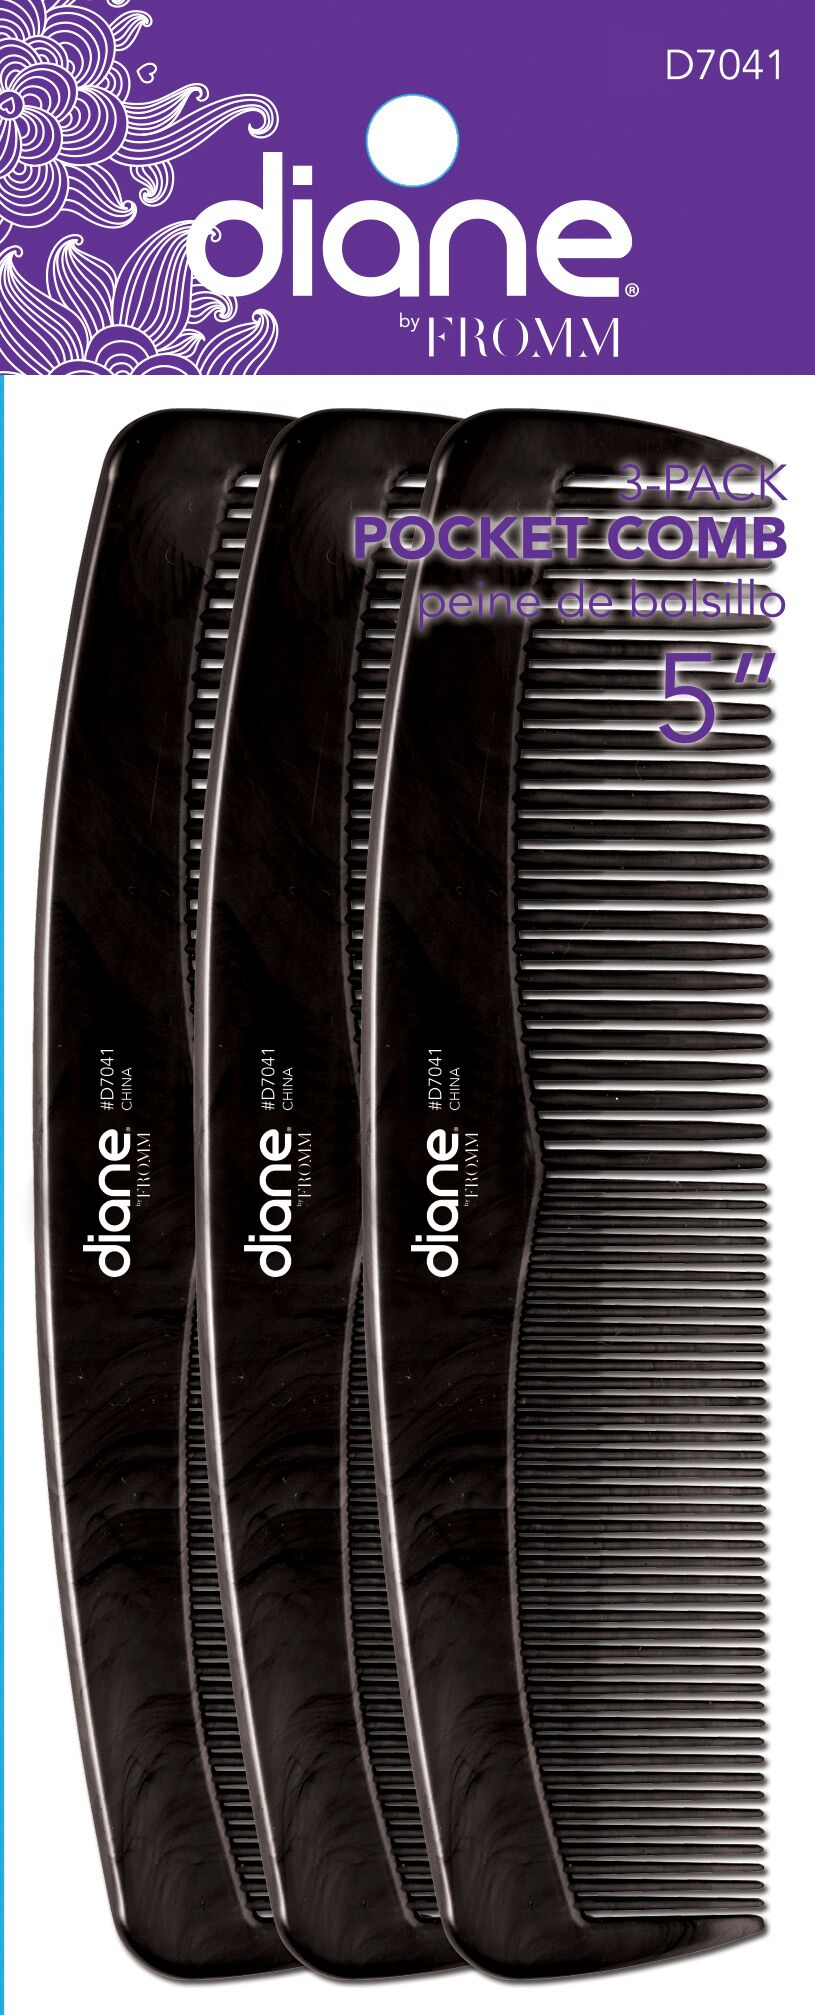 Diane Pocket Comb 5” 3-Pk D7041